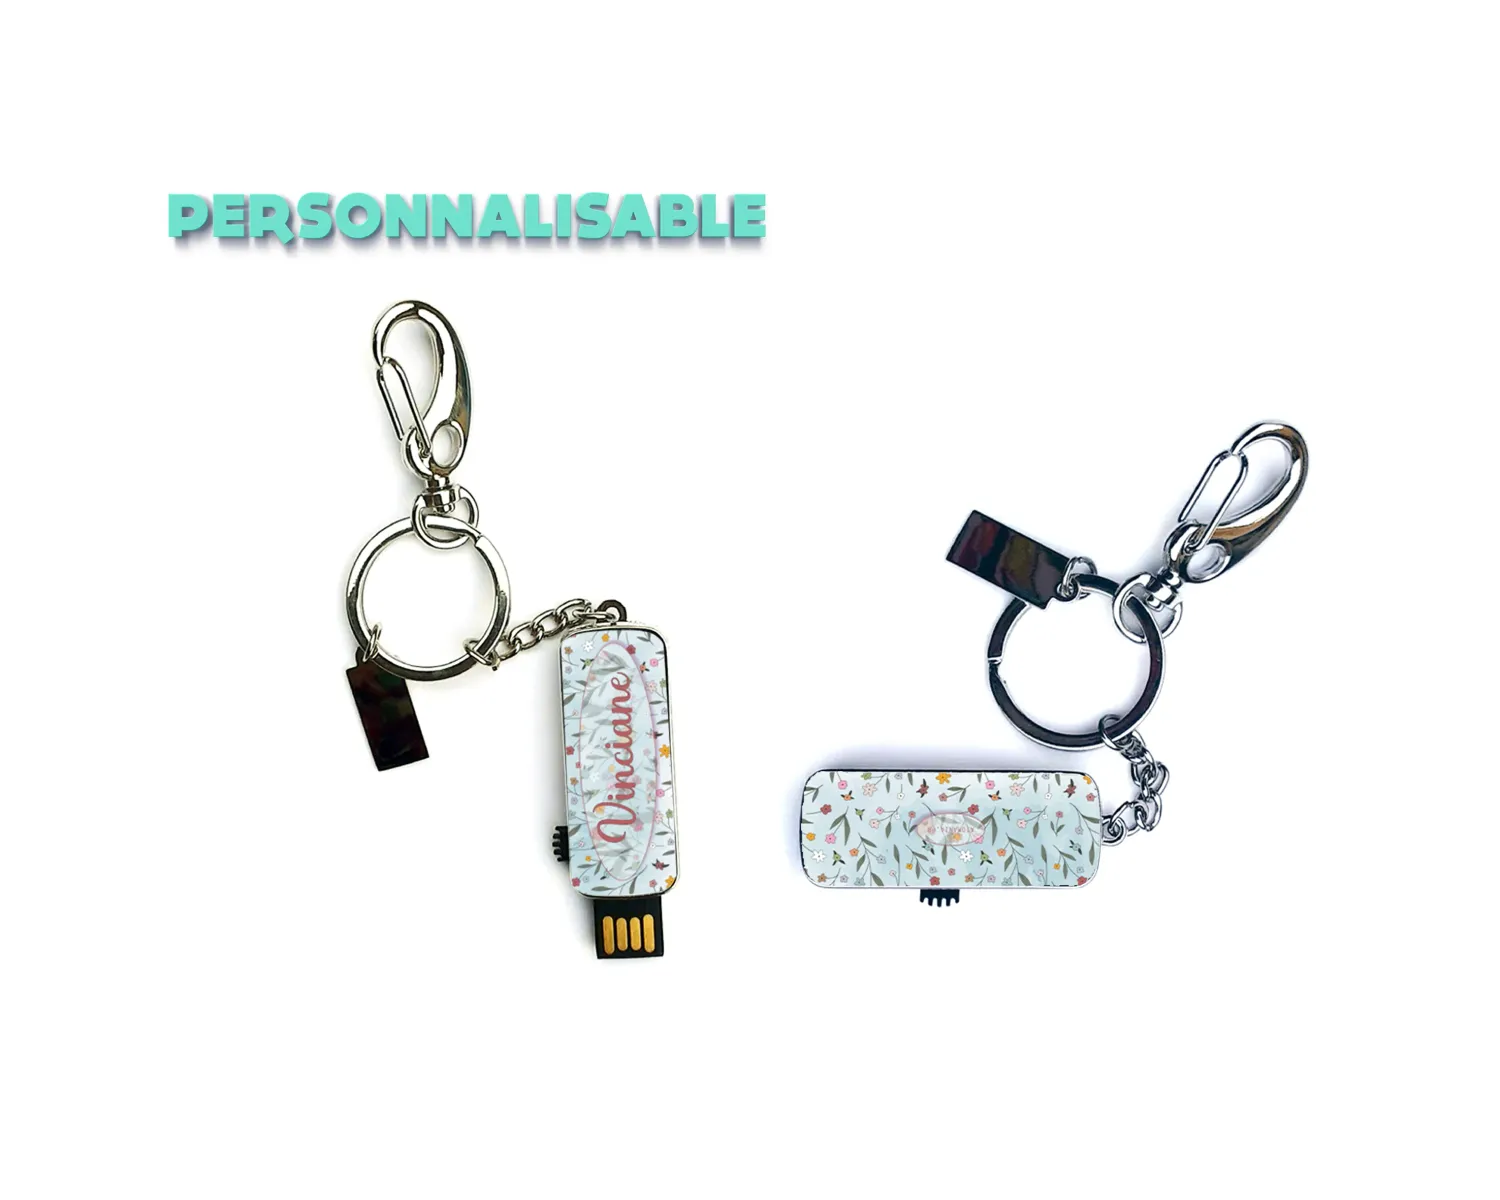 Clé USB Fleurs Personnalisable, Cadeau Original, Pratique, 16Go, Motif Floral Recto-Verso, Fabrication Française, Métal, Atomania